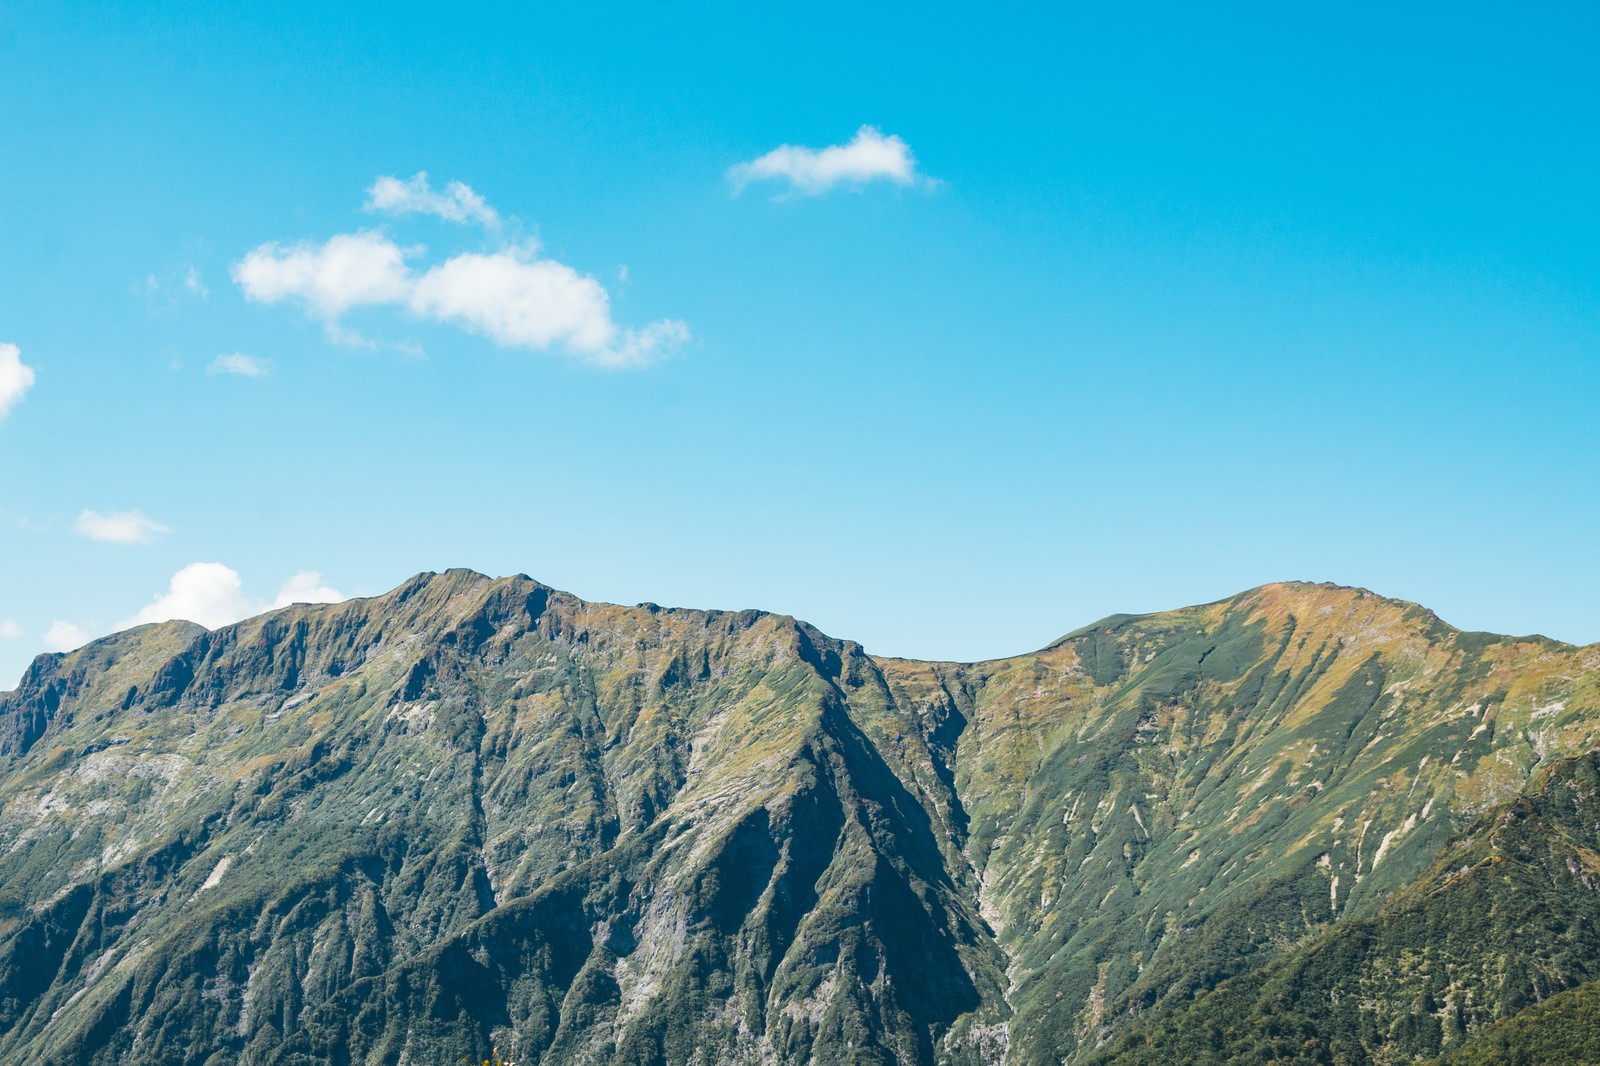 日本百名山 谷川岳 の写真 画像 フリー素材 ぱくたそ